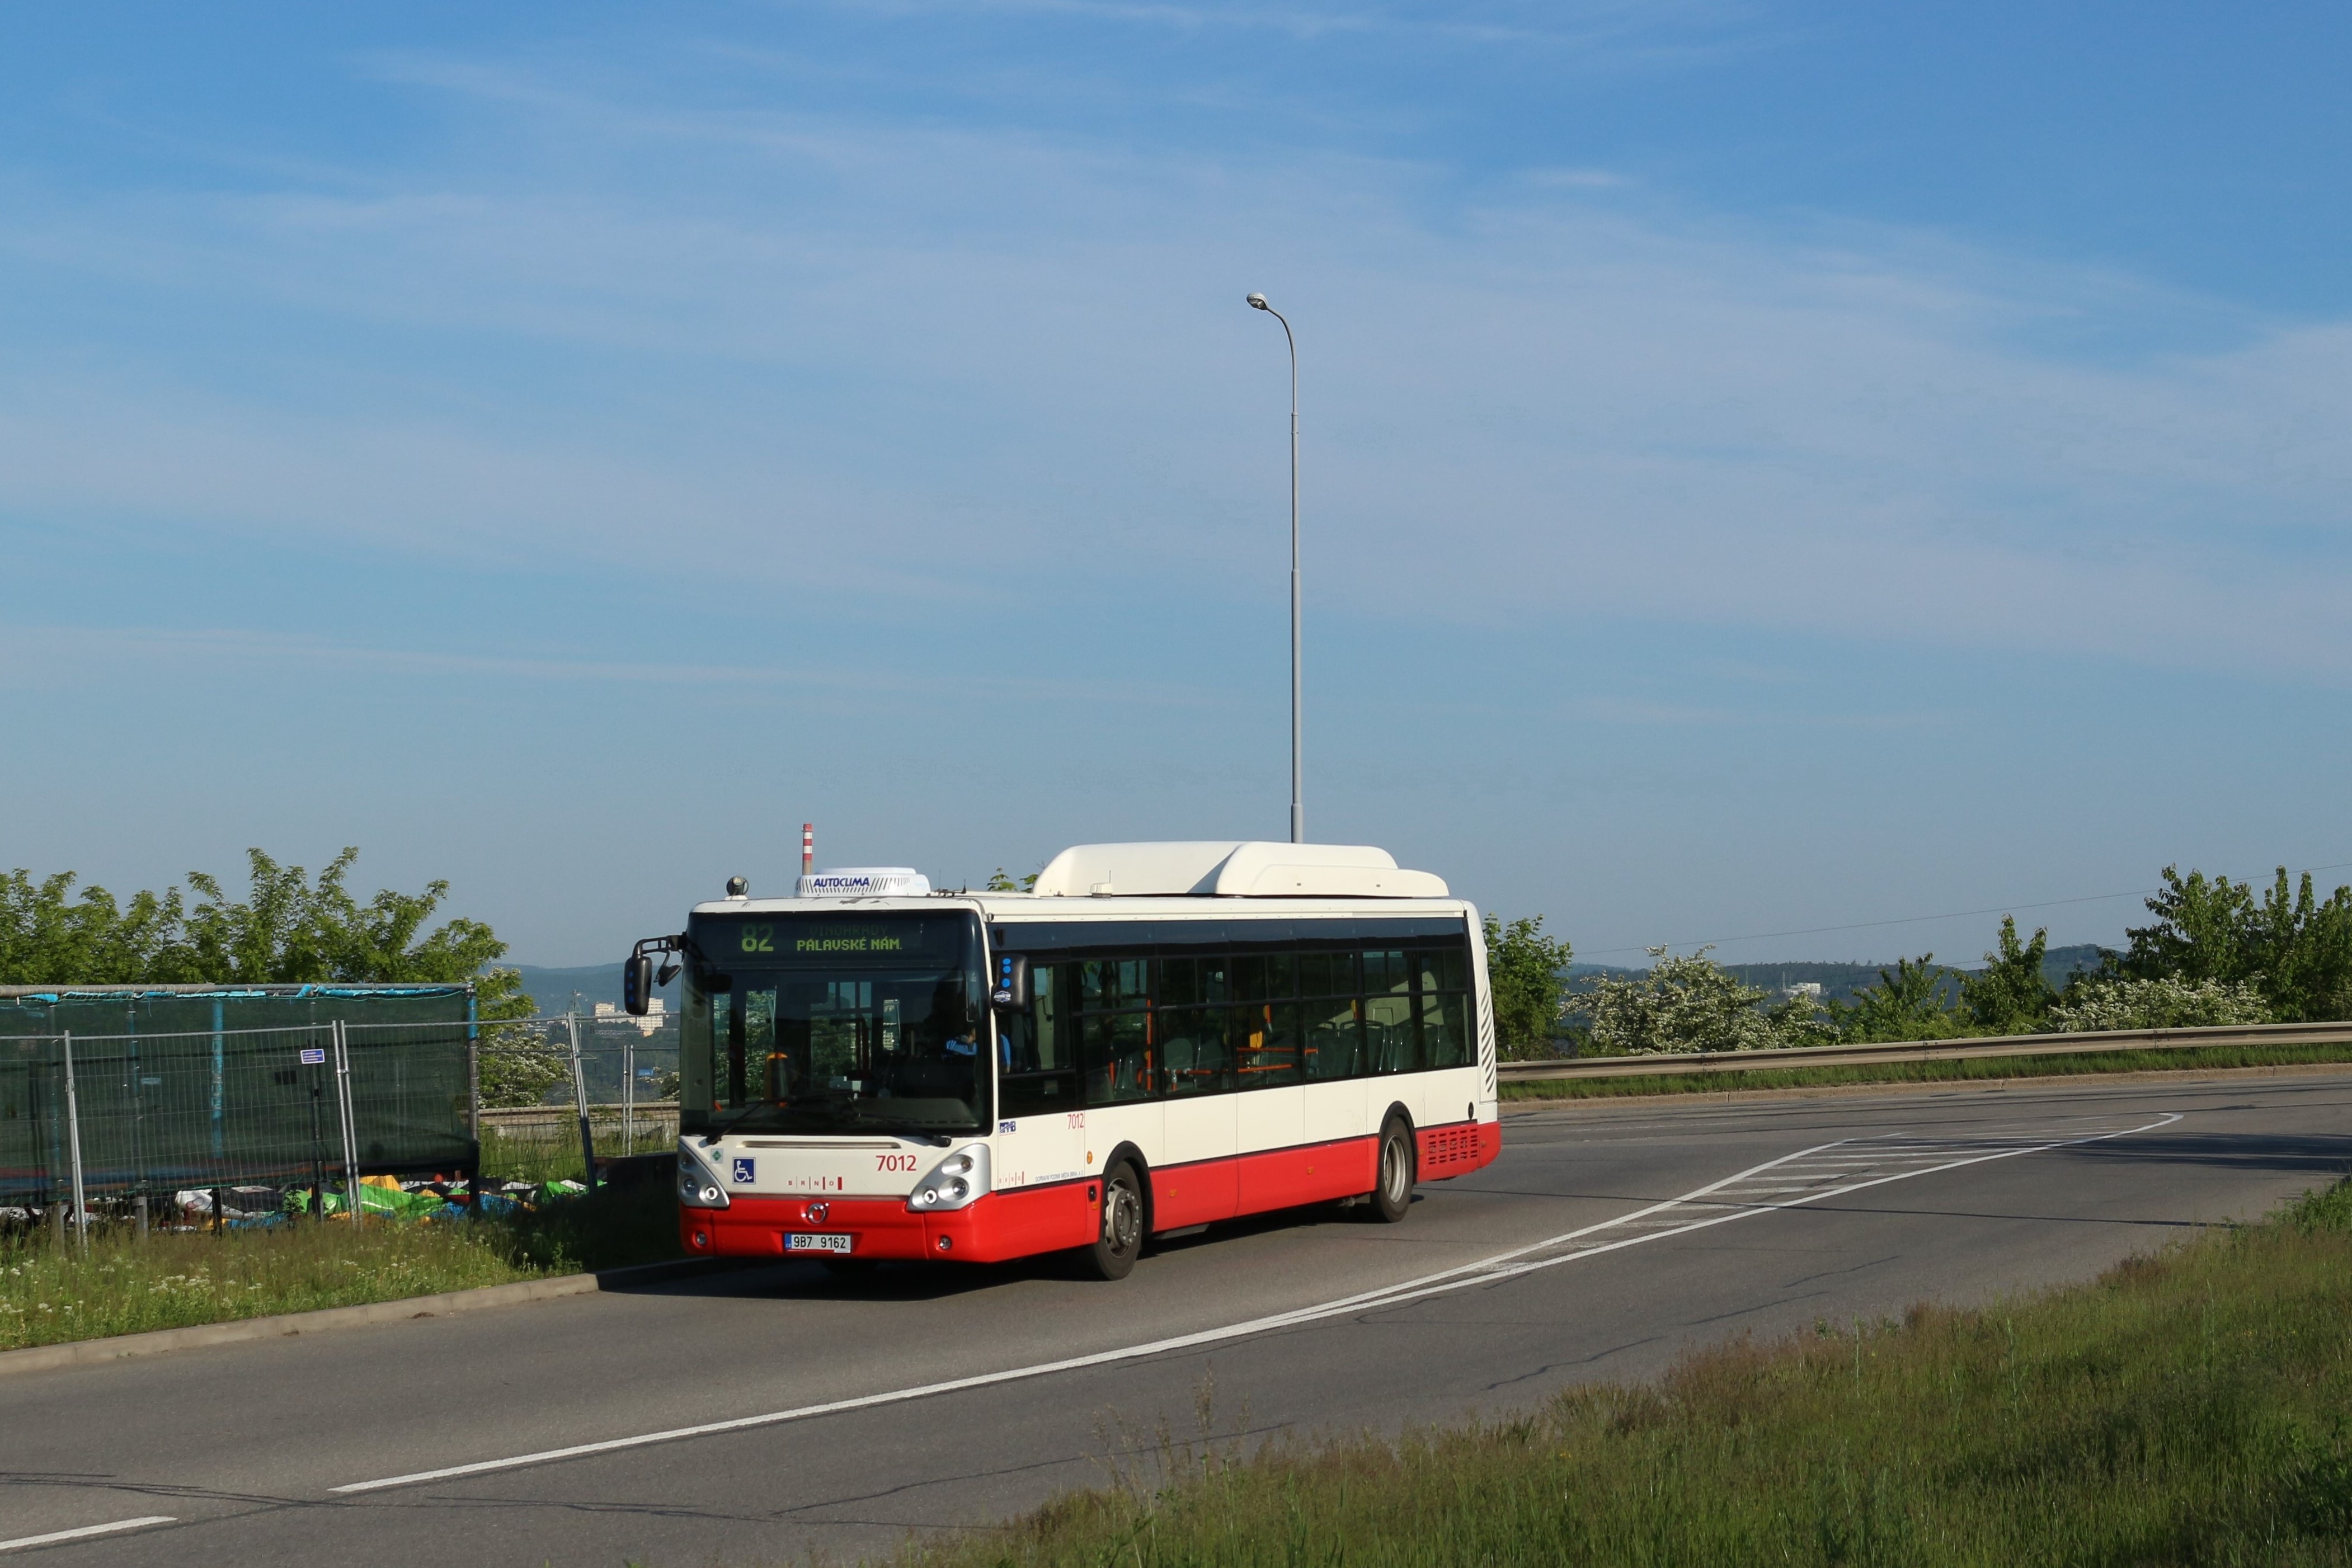 Brno, Irisbus Citelis 12M CNG # 7012